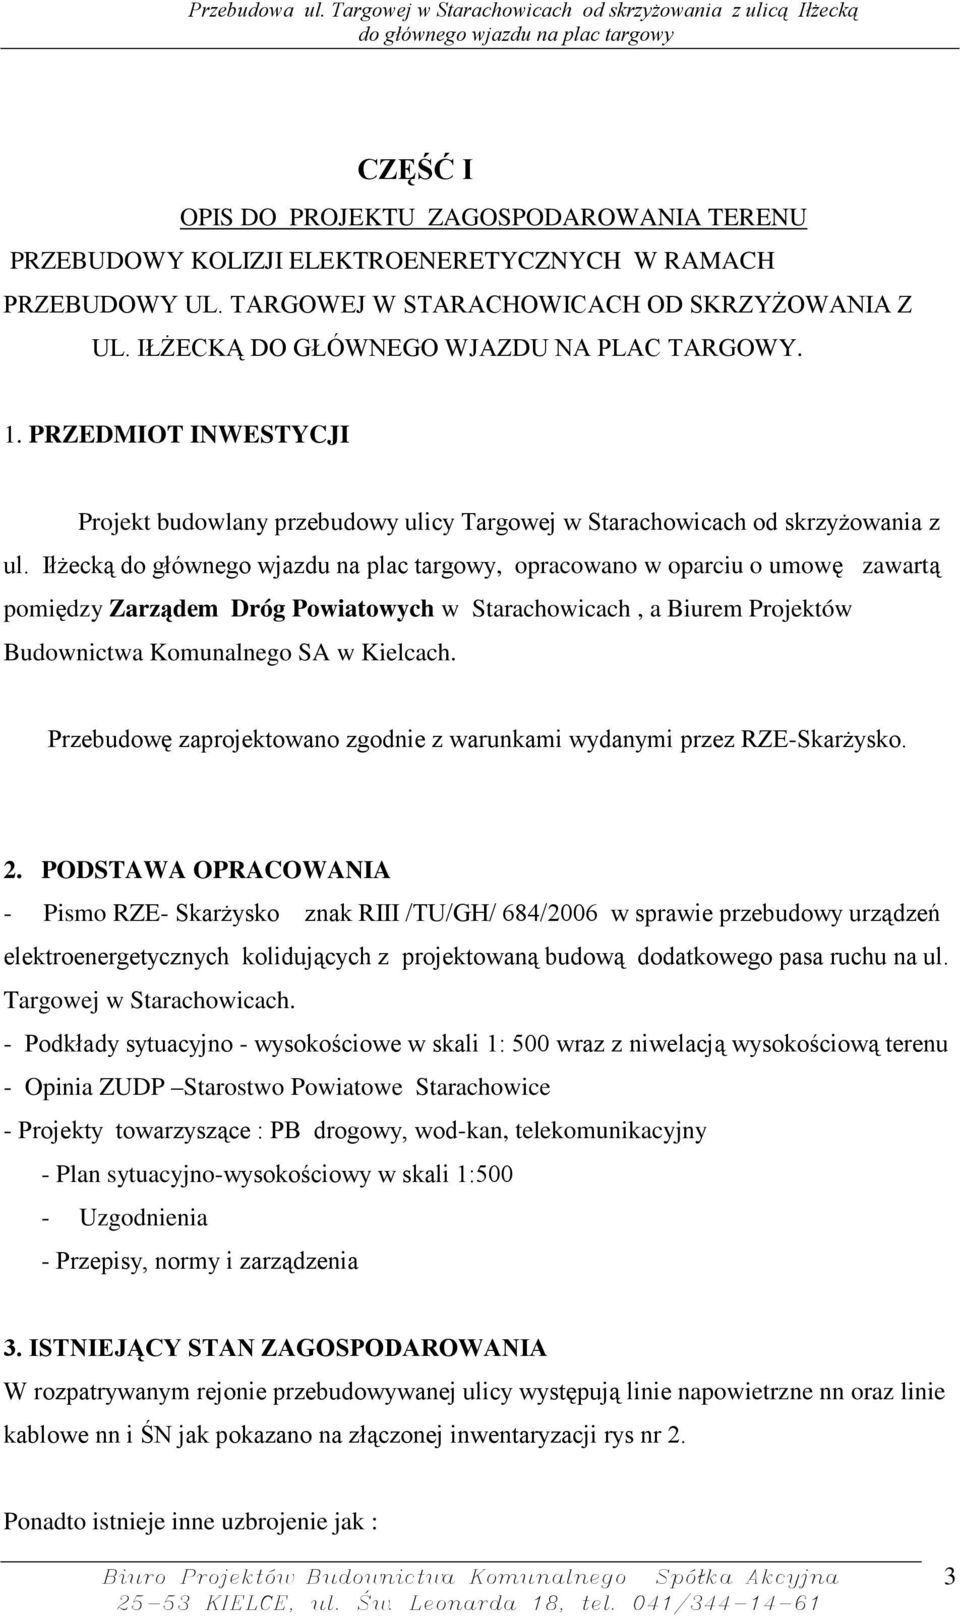 IłŜecką, opracowano w oparciu o umowę zawartą pomiędzy Zarządem Dróg Powiatowych w Starachowicach, a Biurem Projektów Budownictwa Komunalnego SA w Kielcach.